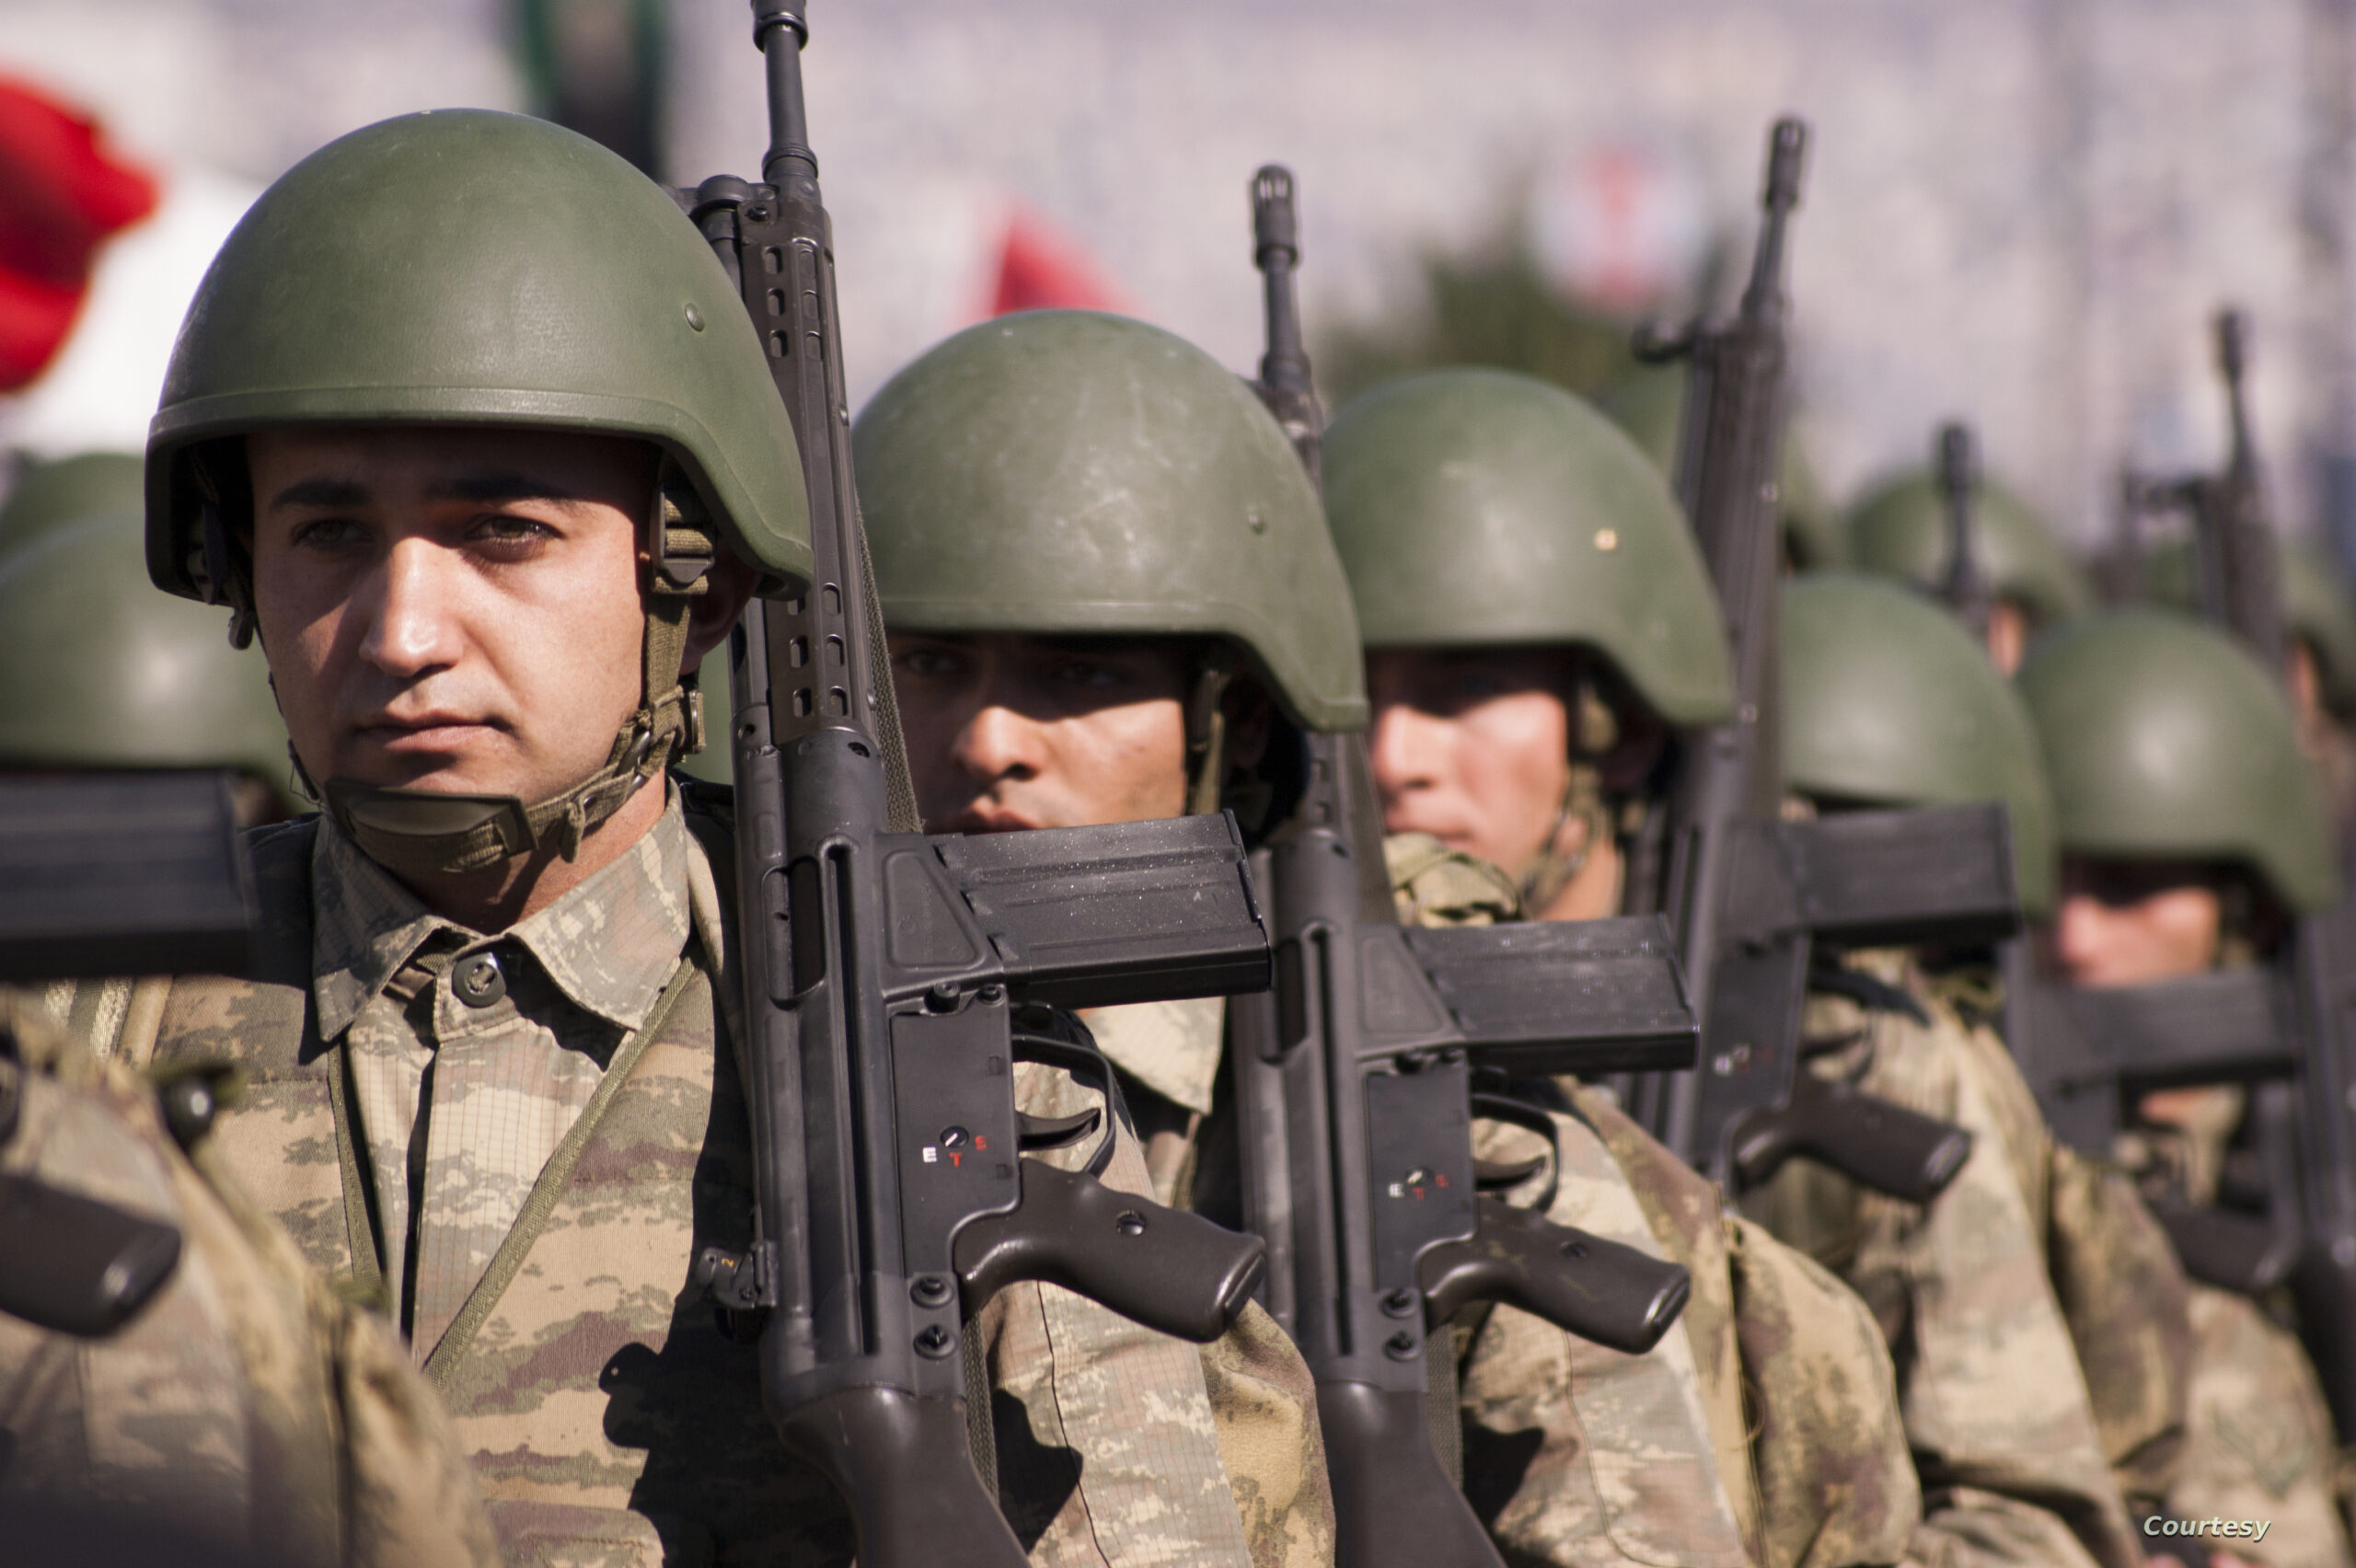 Türkiye, Irak’taki NATO misyonu için bir tehdittir